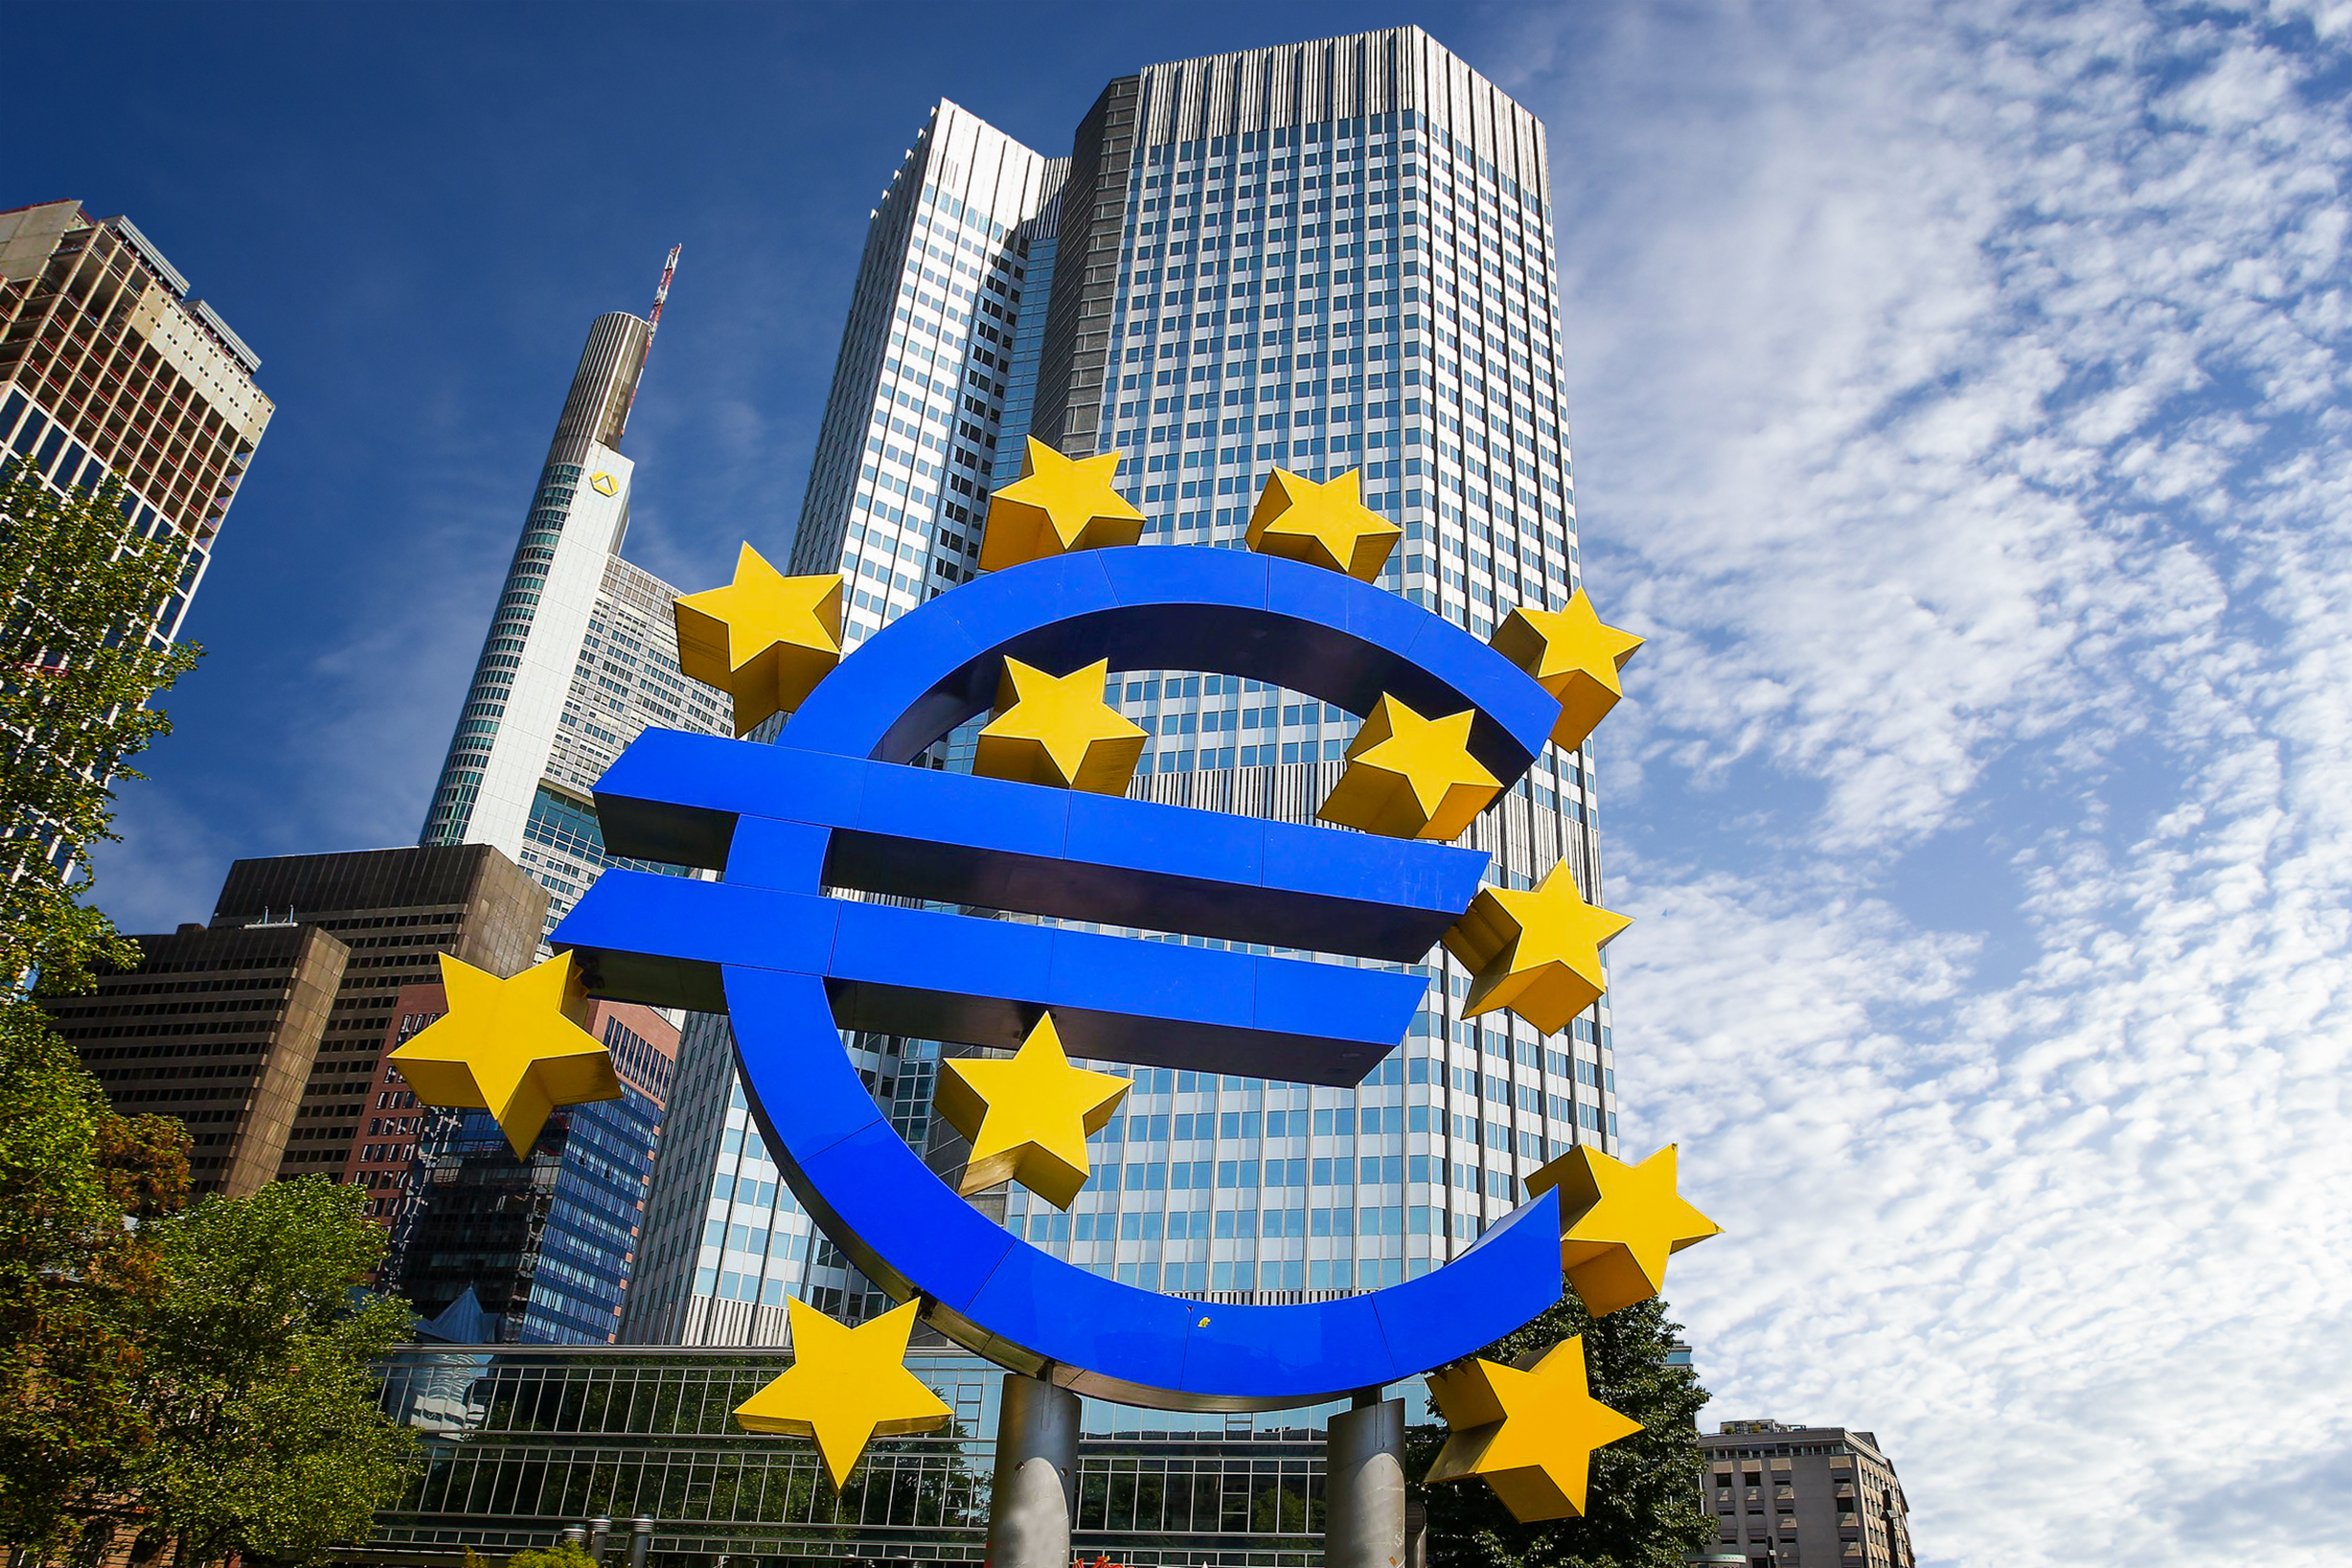 Unione bancaria europea, il progetto rimane sospeso